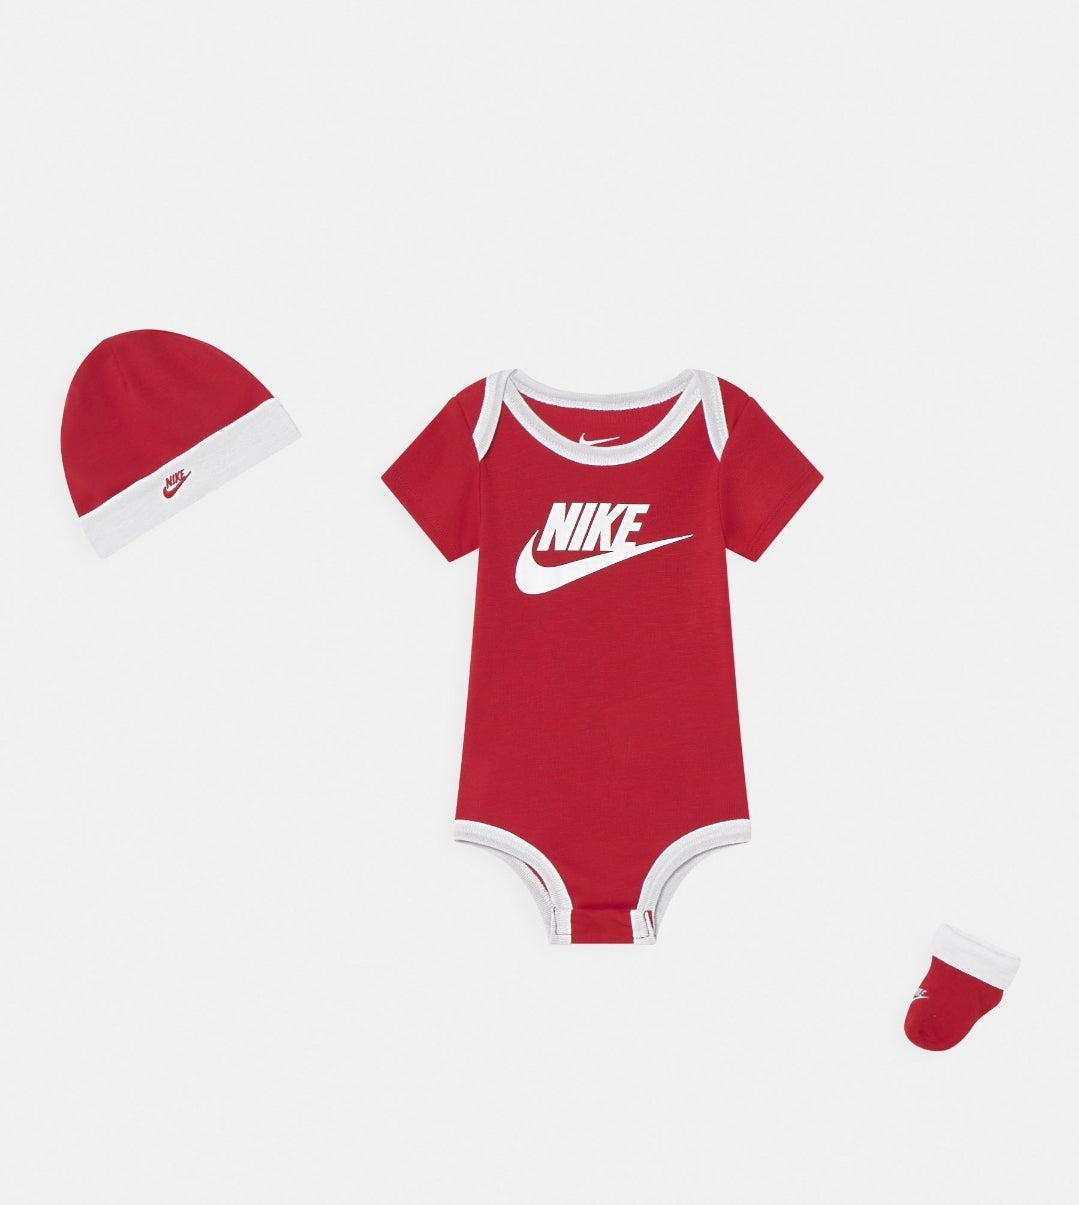 Nike Red/white Futura baby box